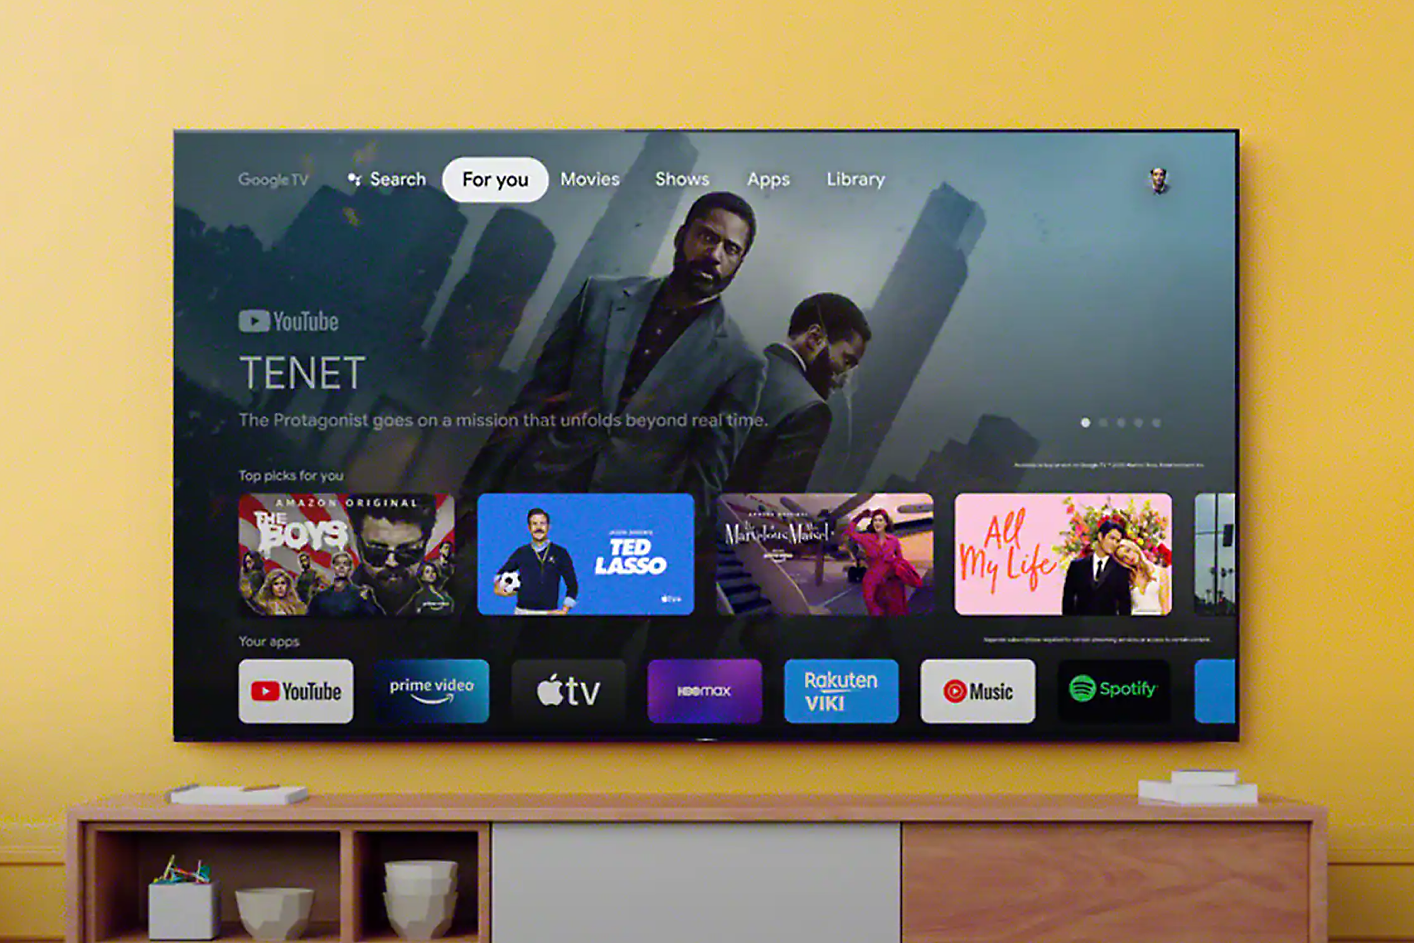 TV ekran na kom se vidi interfejs sa navigacijom pretrage i izborom aplikacija, dok je u pozadini ekrana scena iz filma „Tenet“.